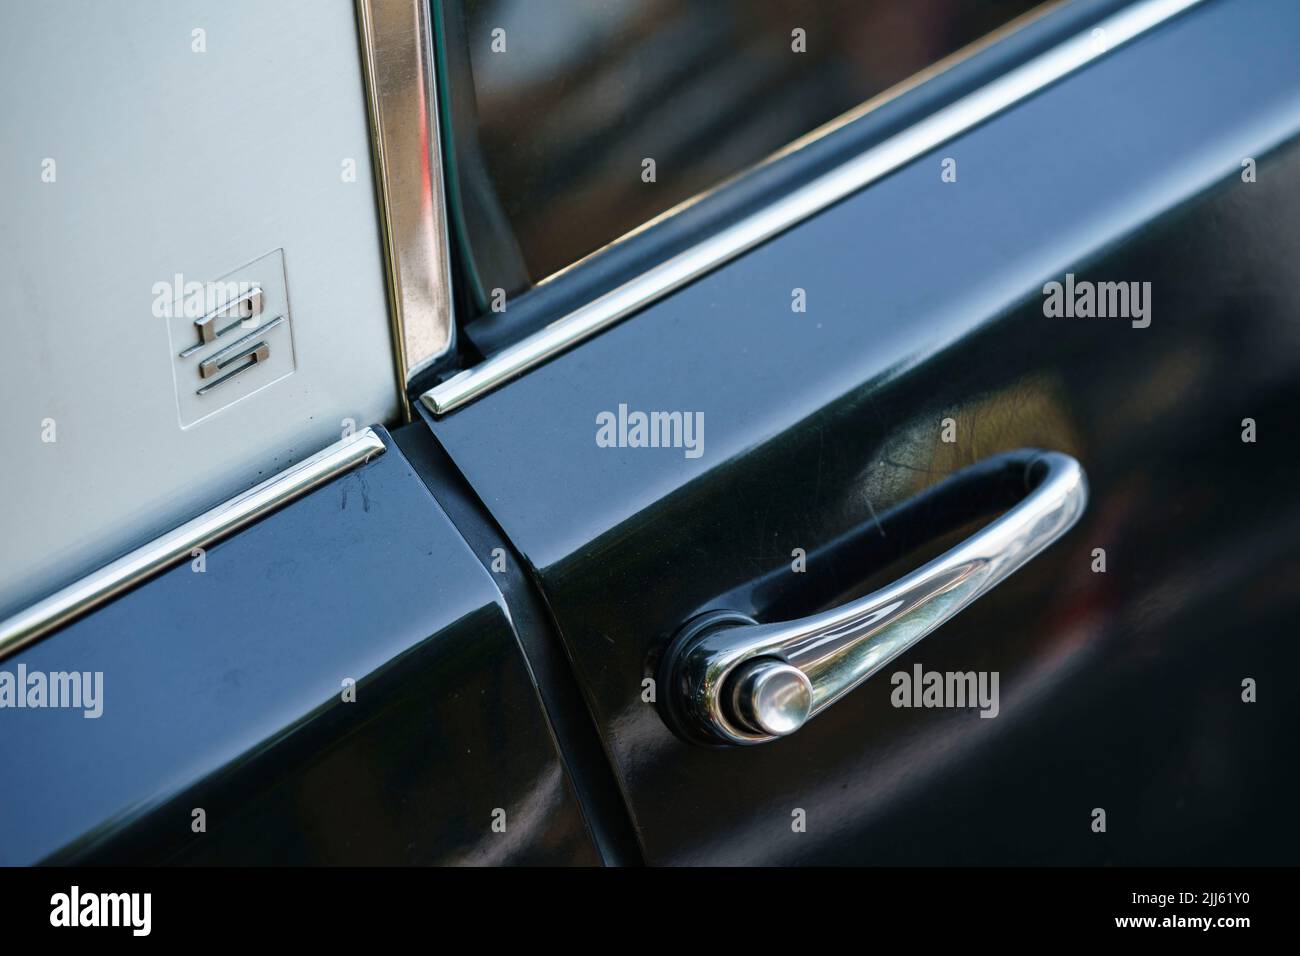 Detalle del tirador de la puerta de un coche clásico Citroen DS del fabricante francés Citroën Foto de stock